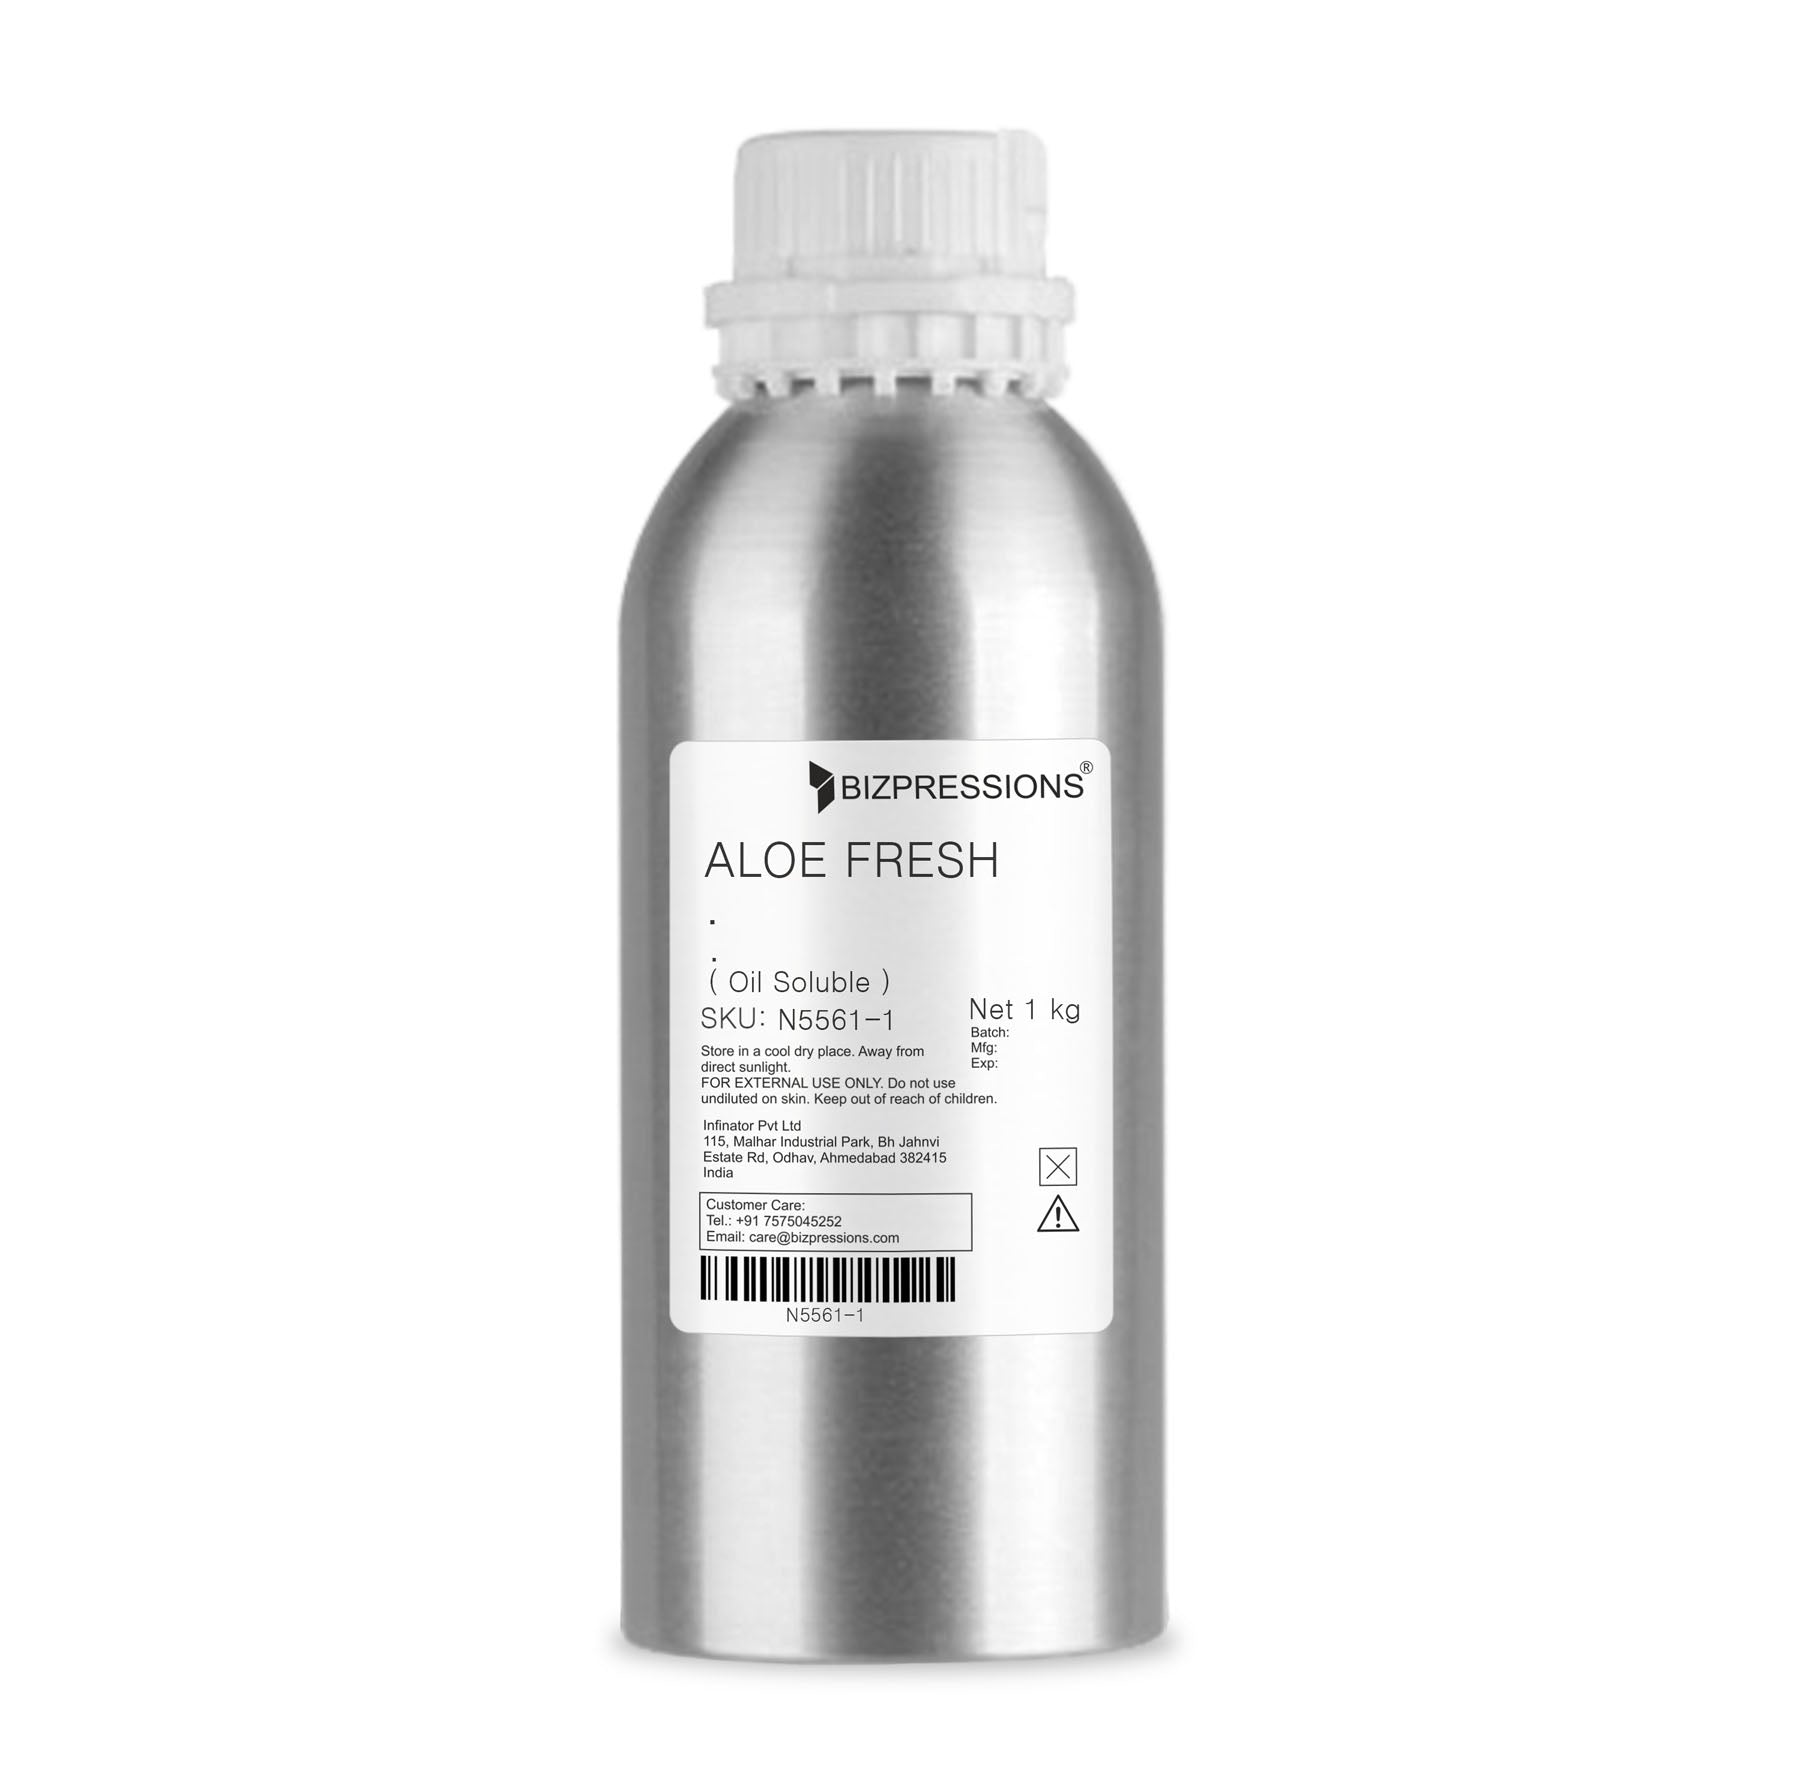 ALOE FRESH - Fragrance ( Oil Soluble ) - 1 kg